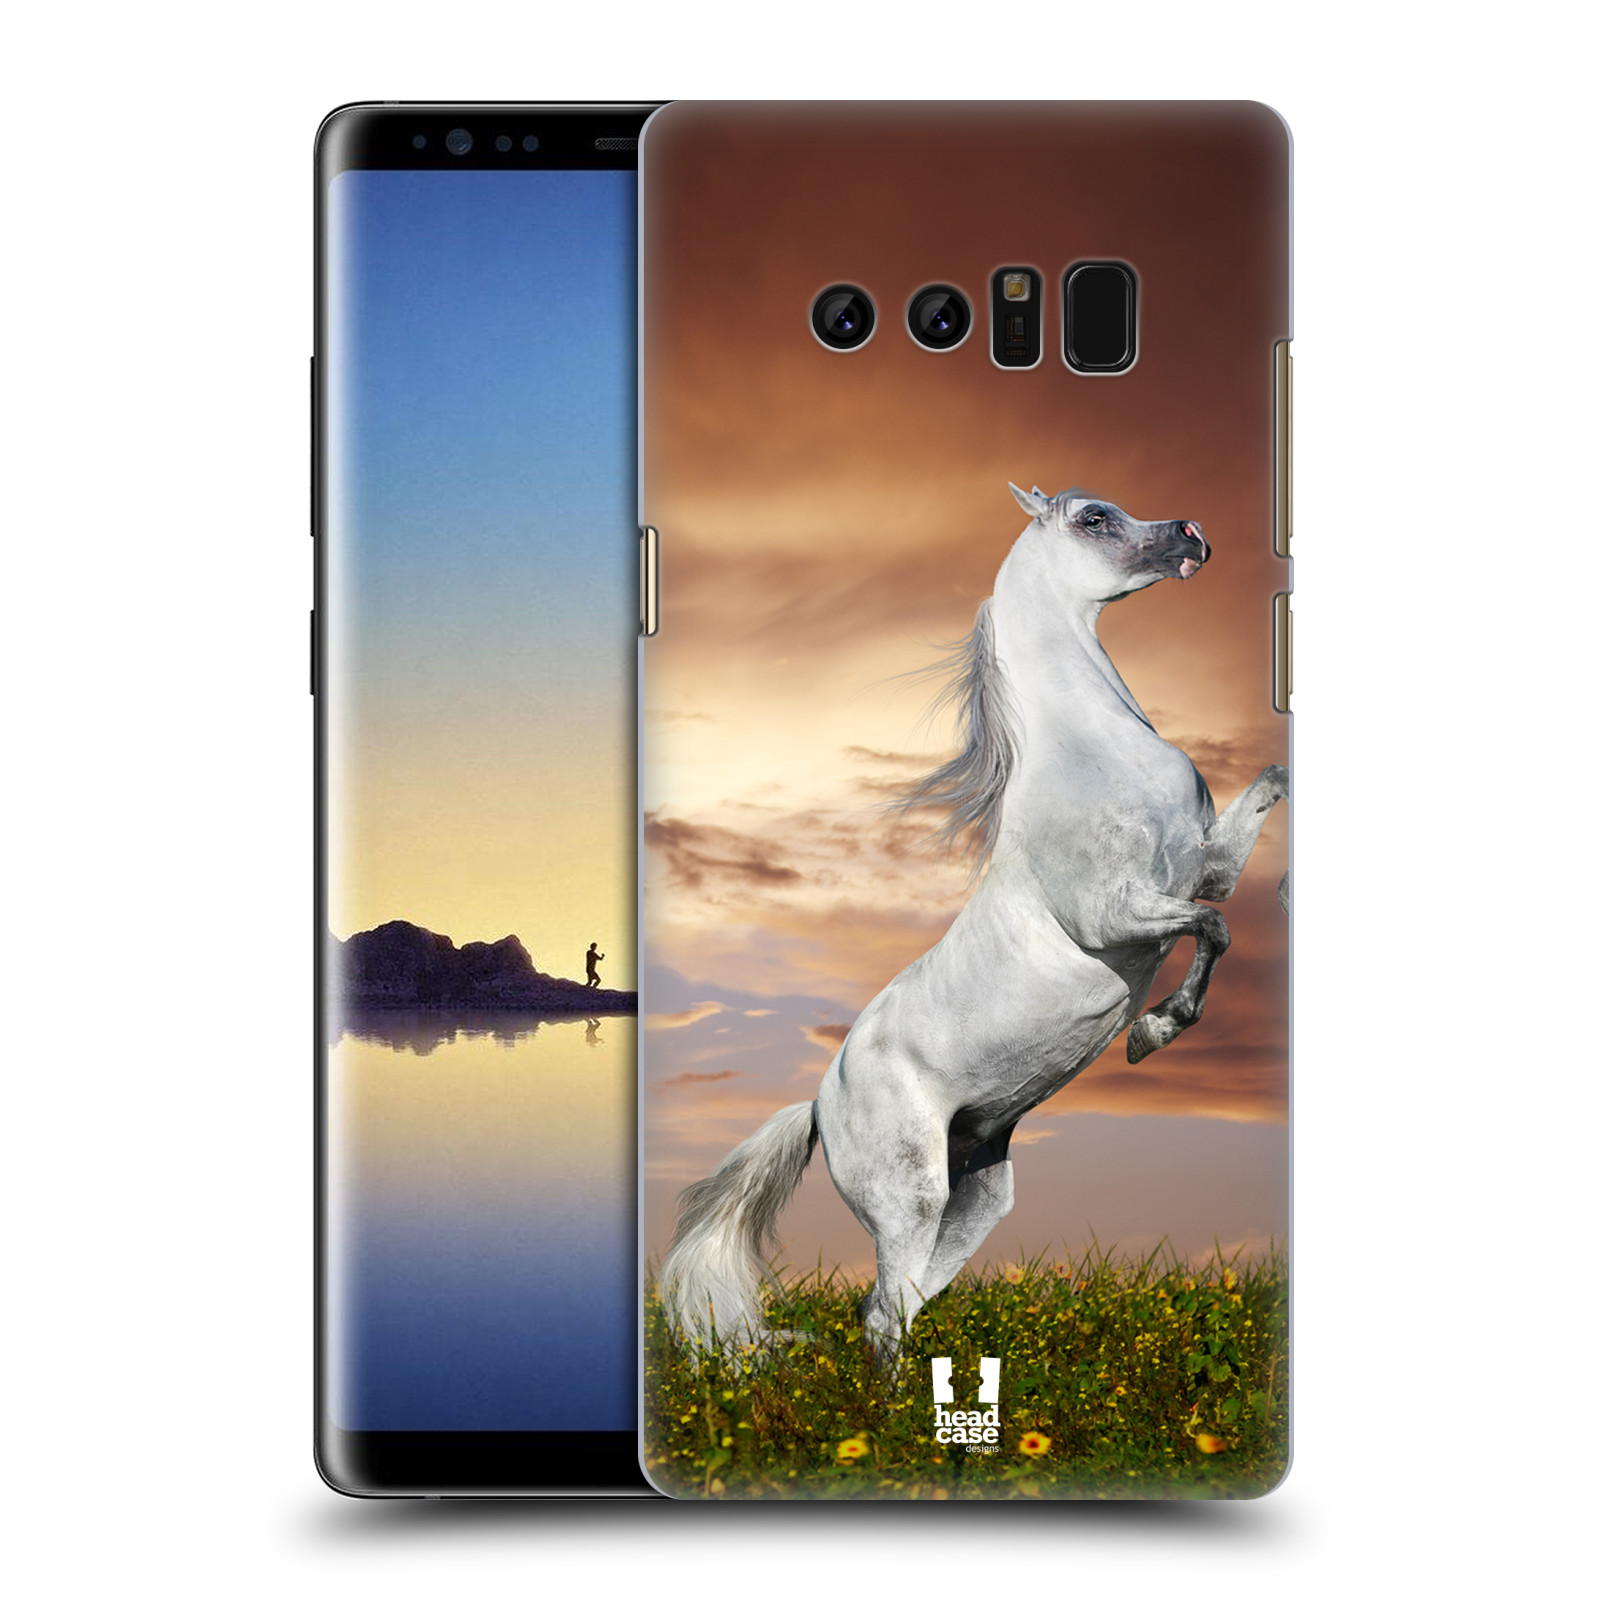 Zadní obal pro mobil Samsung Galaxy Note 8 - HEAD CASE - Svět zvířat divoký kůň